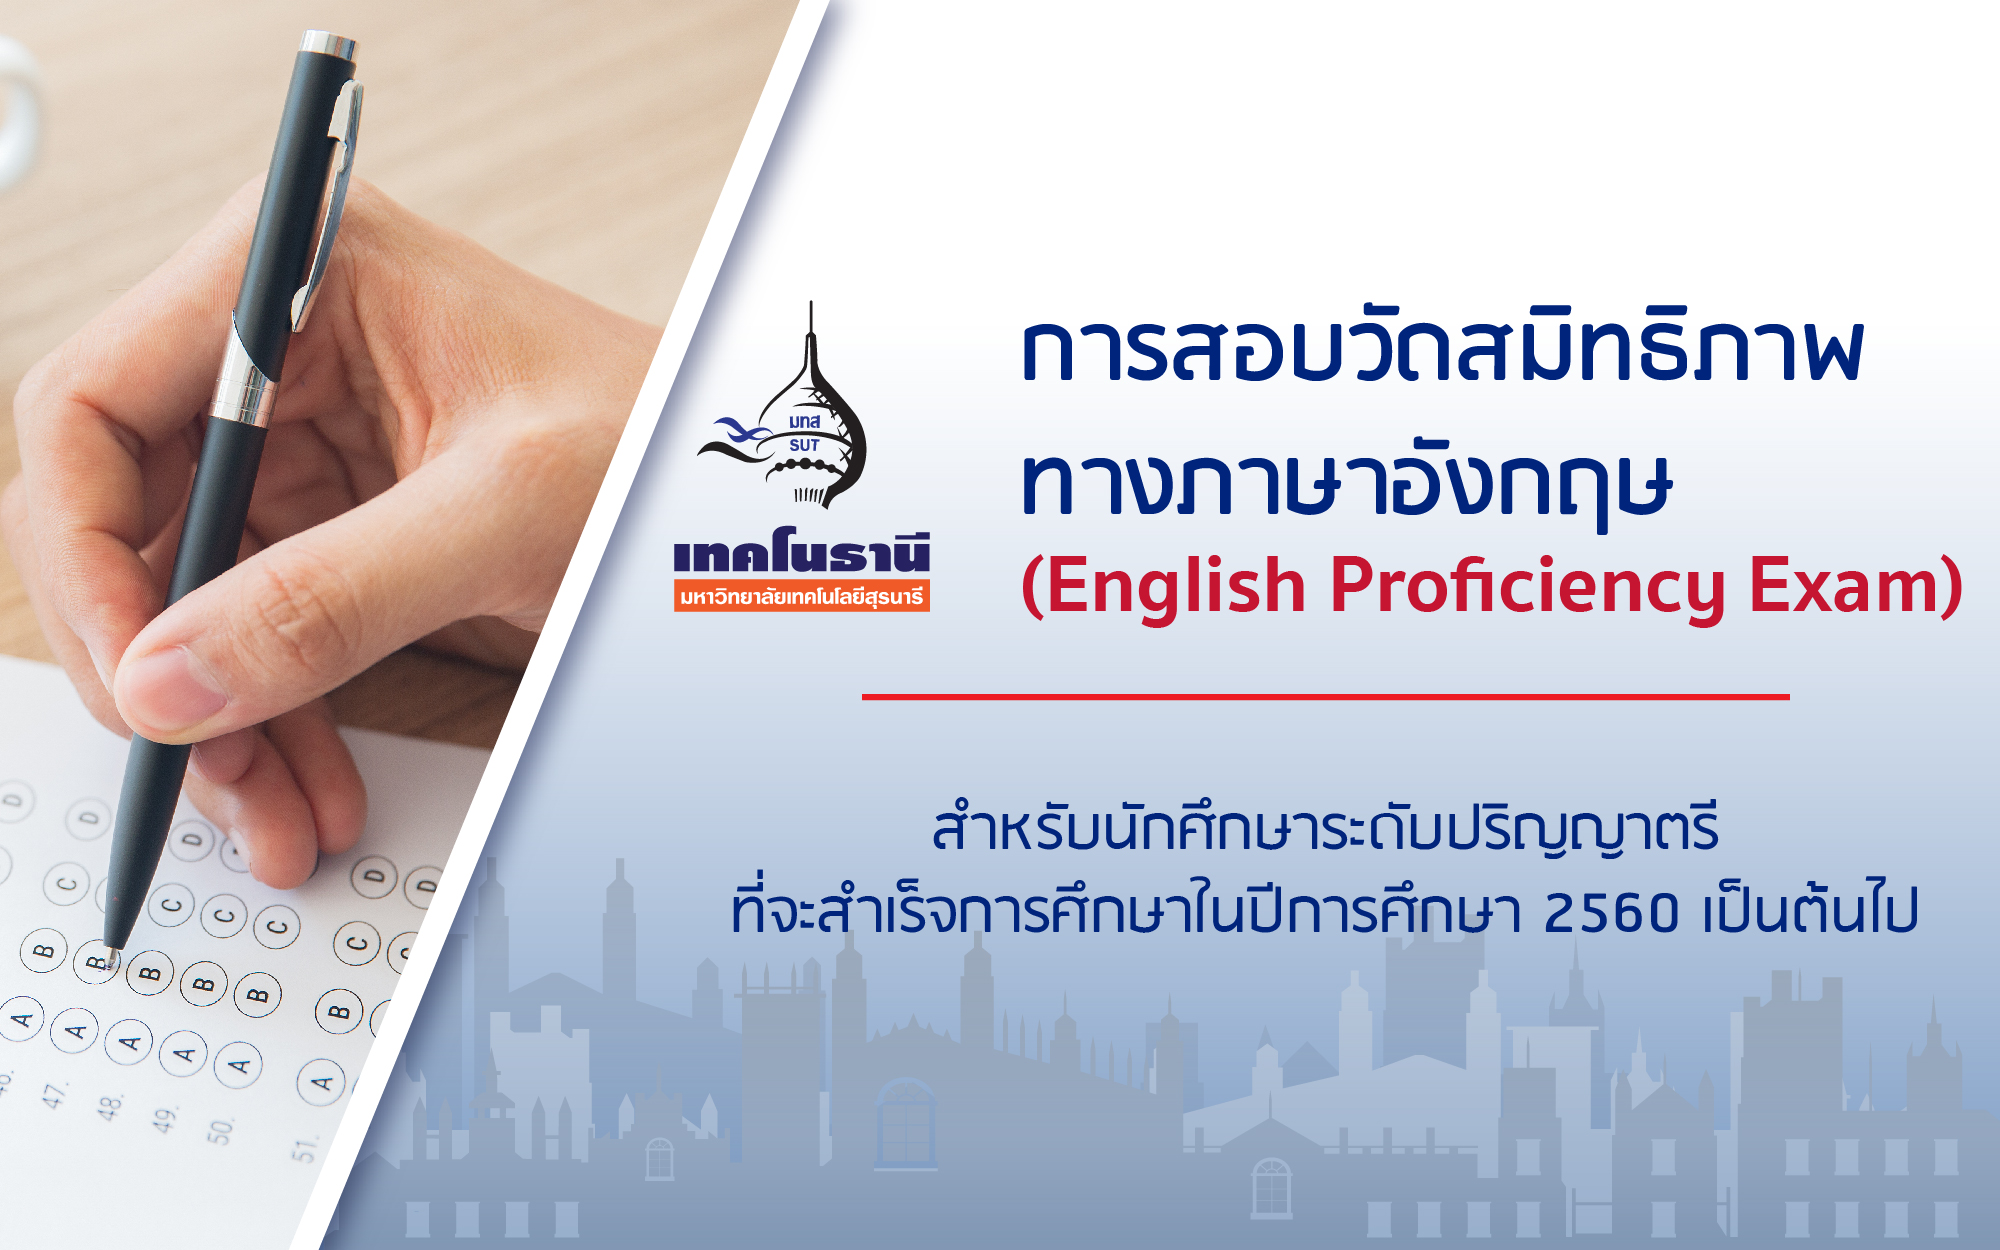 การสอบวัดสมิทธิภาพทางภาษาอังกฤษ (English Proficiency Exam) 